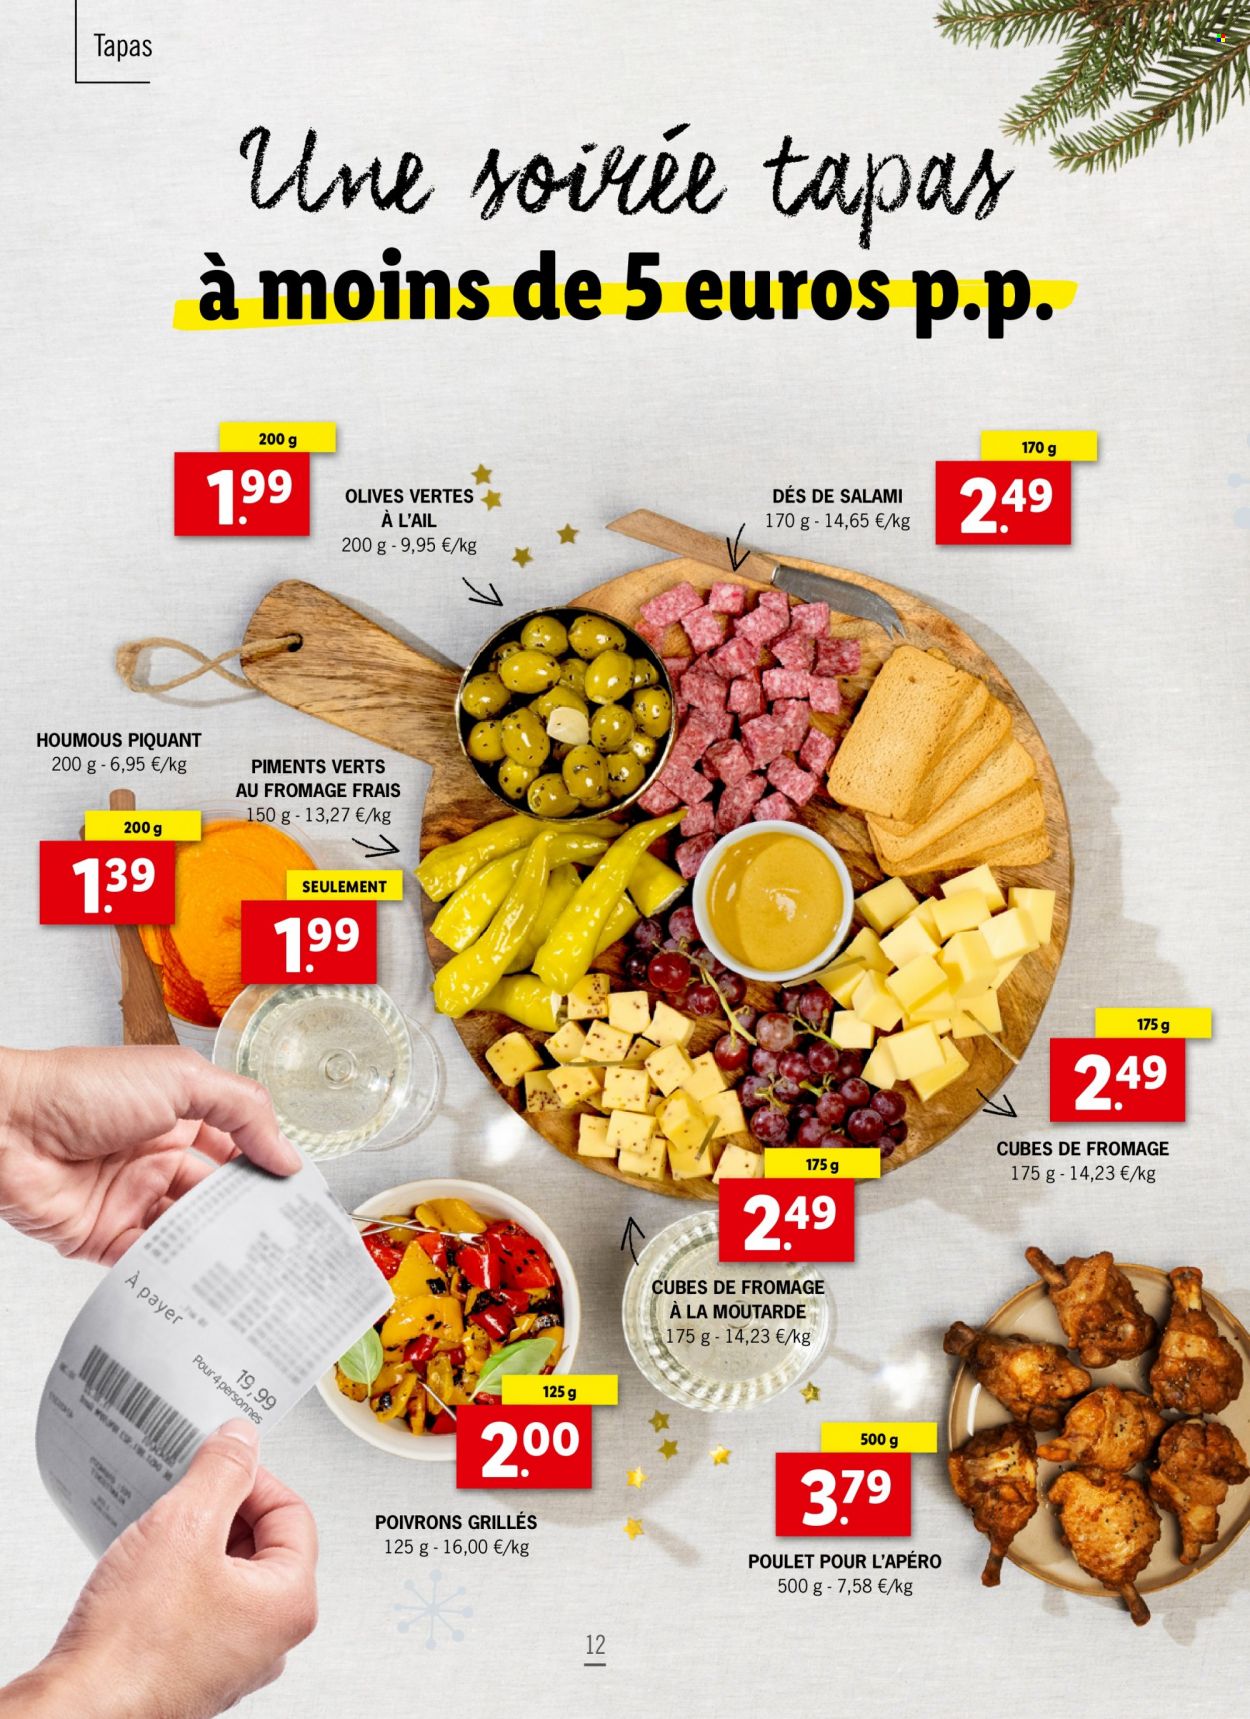 Lidl-aanbieding -  producten in de aanbieding - tapas, salami, hummus, mosterd. Pagina 12.